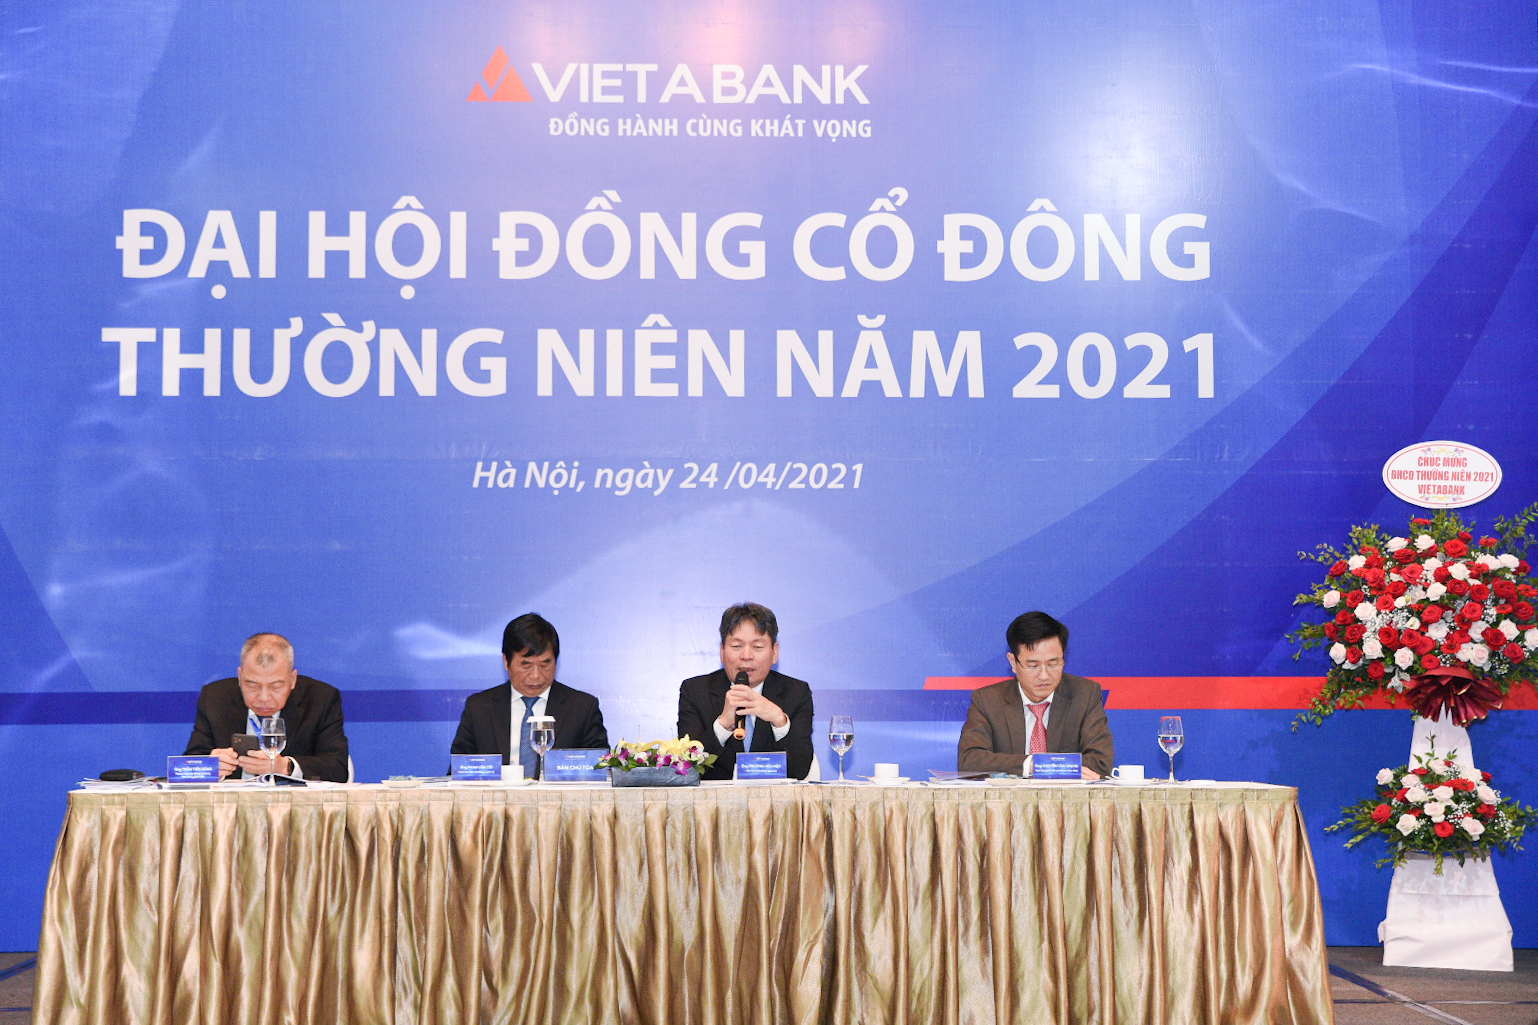 VAB là ngân hàng đầu tiên đăng ký giao dịch trên sàn UPCoM trong năm 2021.